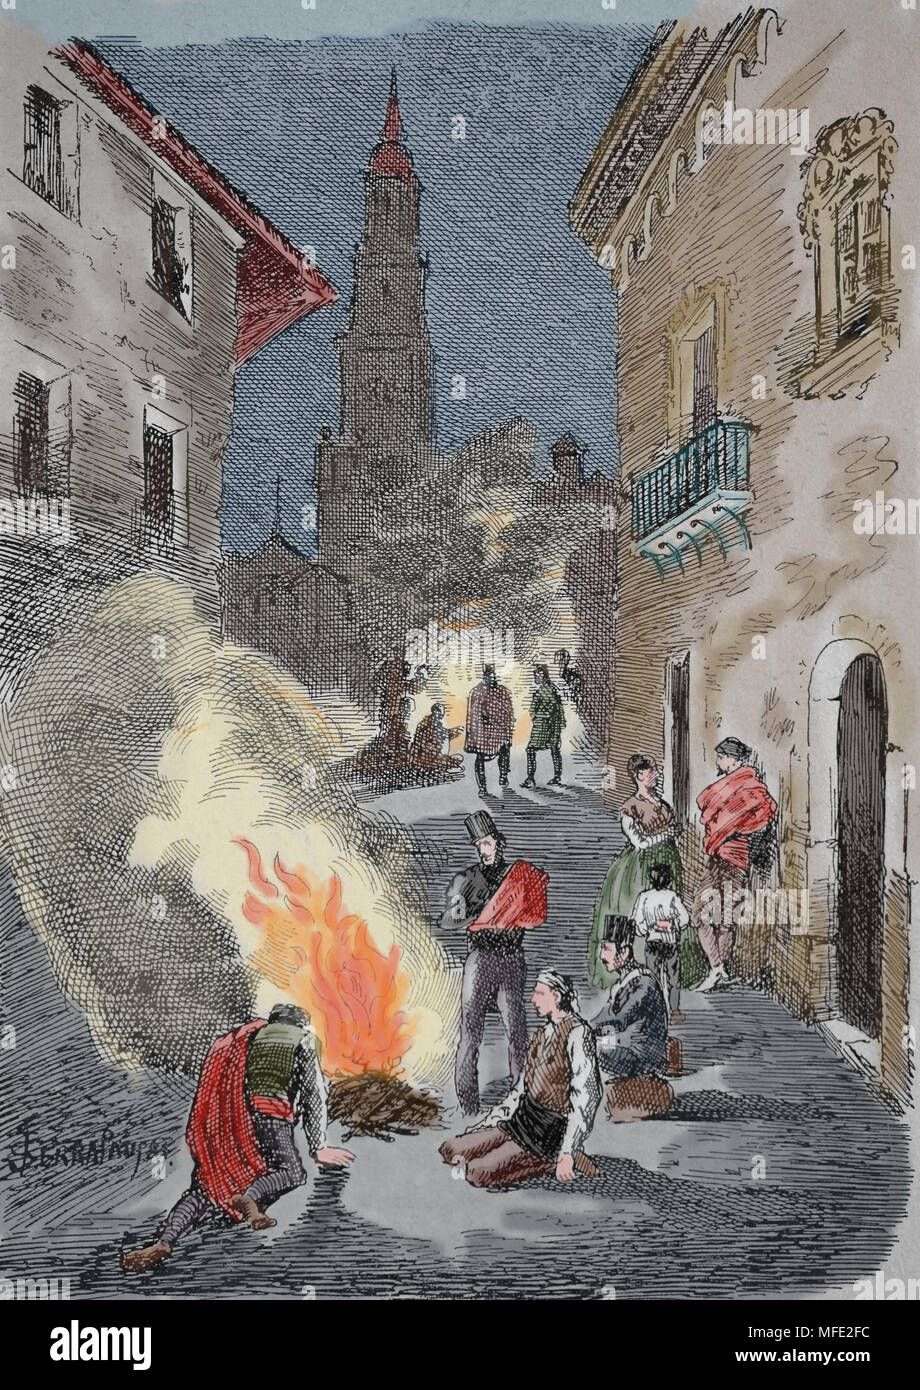 Premier siège de Saragosse. La guerre péninsulaire (1807-1814). Rue de la ville au cours de l'emplacement. Gravure, 19ème siècle. Banque D'Images